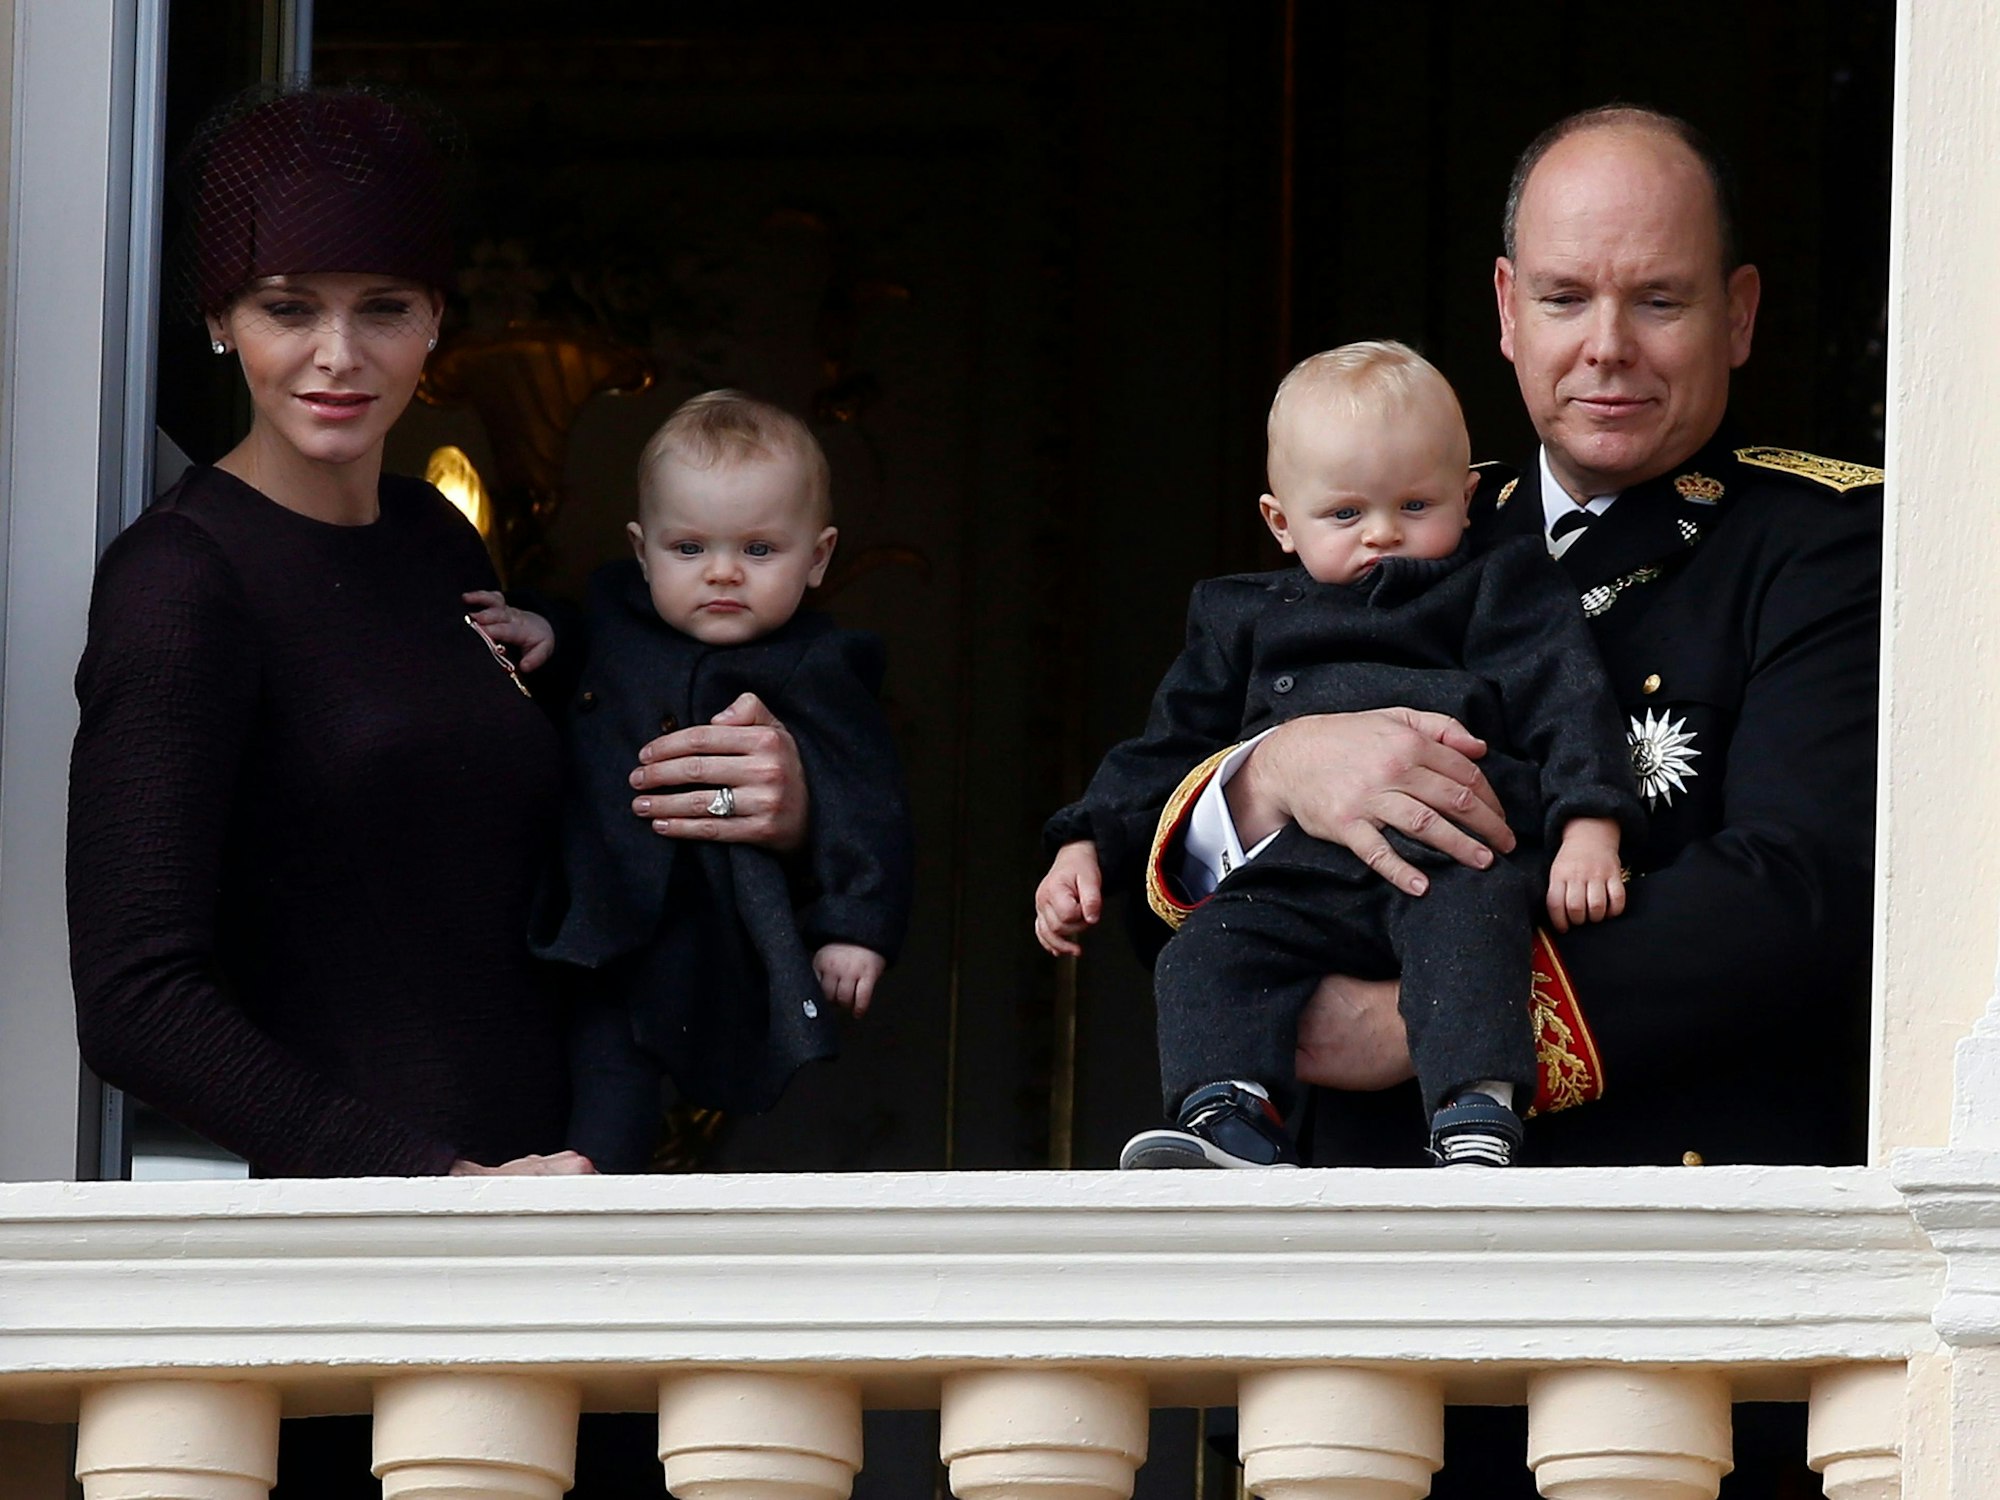 Fürst Albert II und Charlene (L) halten ihre Kinder.